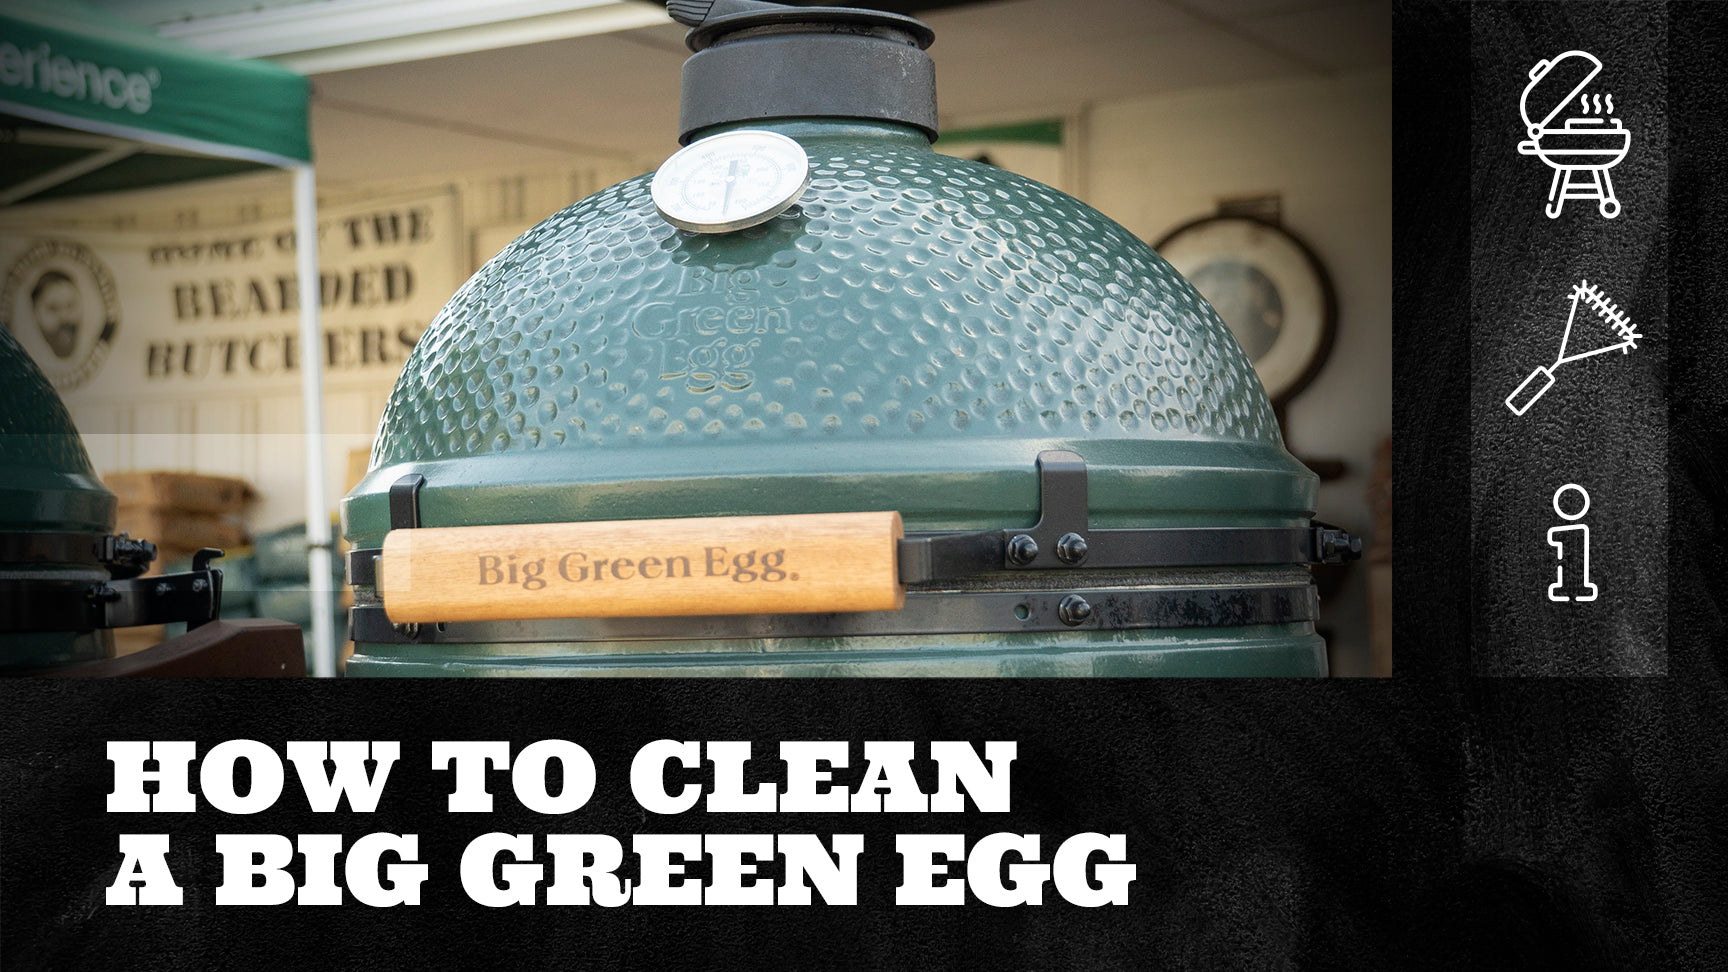 zoeken Verknald Postbode How to Clean a Big Green Egg – The Bearded Butchers